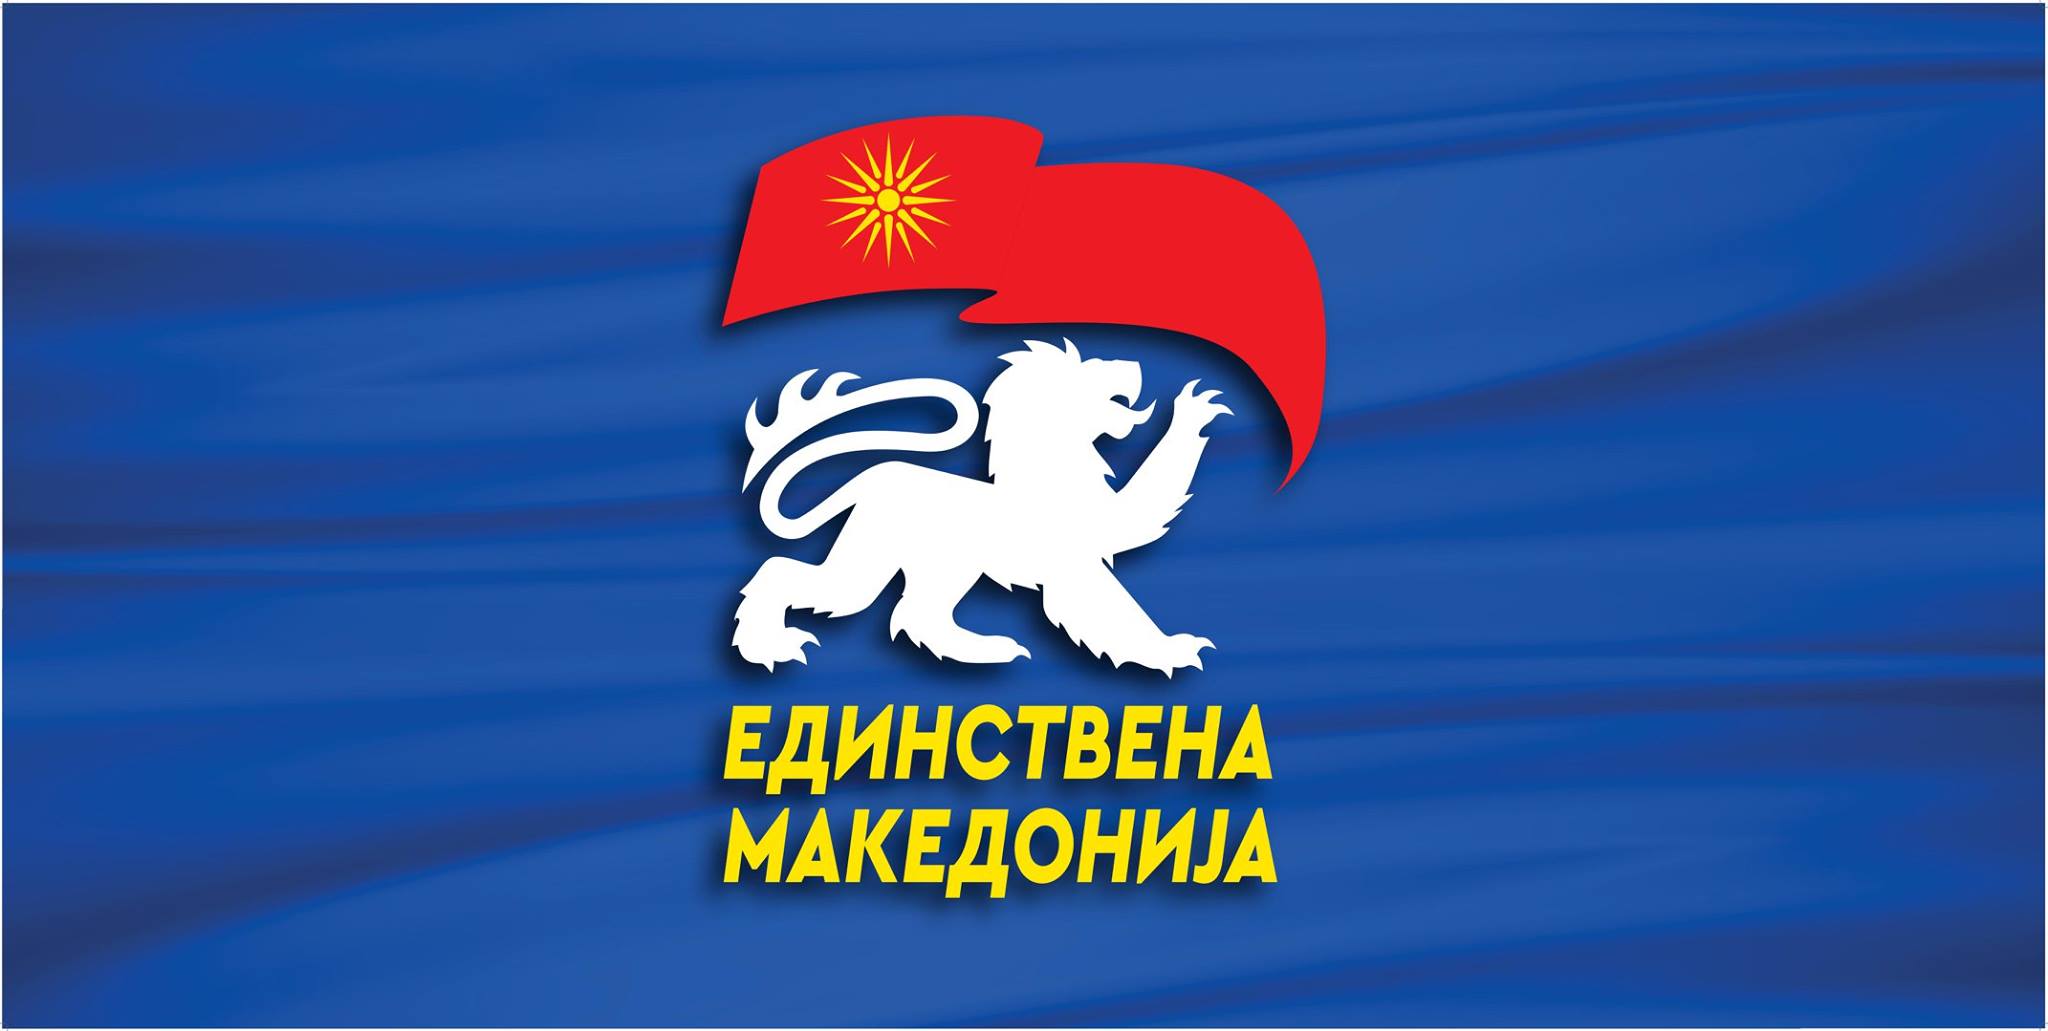 Единствена Македонија: Во името на светскиот мир, Македонија да го блокира приемот на Финска и Шведска во НАТО